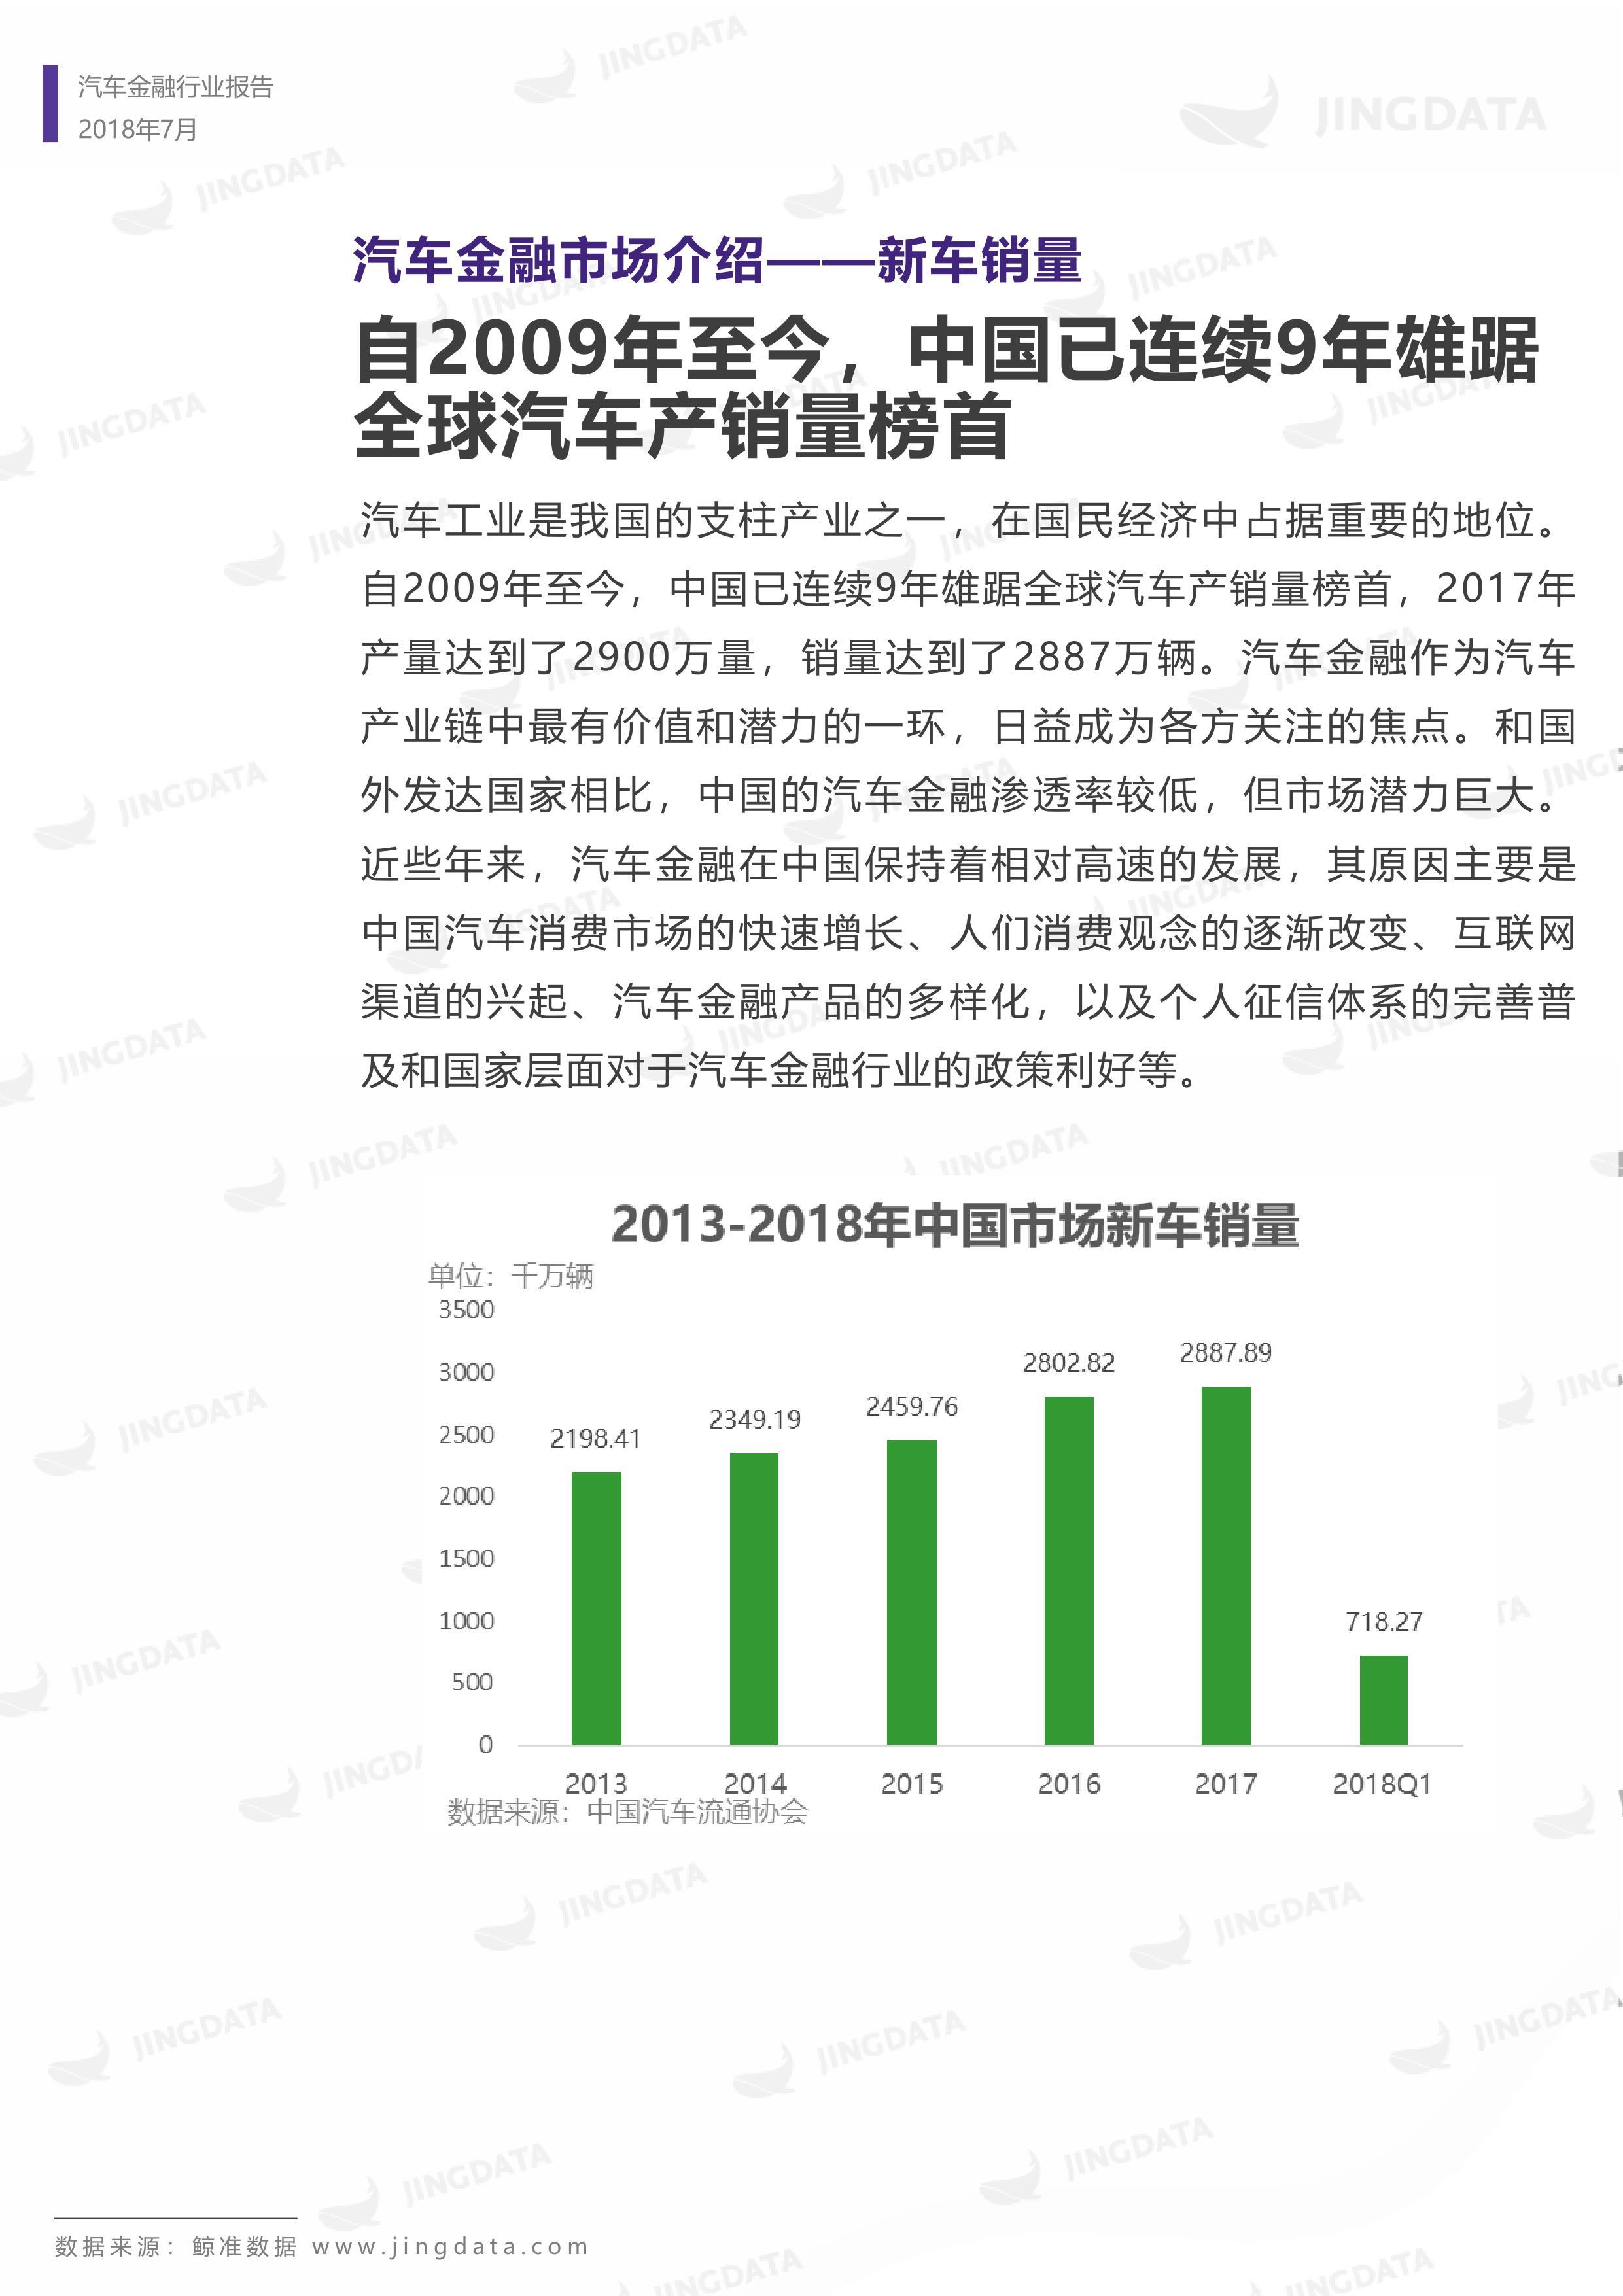 2018年中国汽车金融行业研究报告丨鲸准研究院